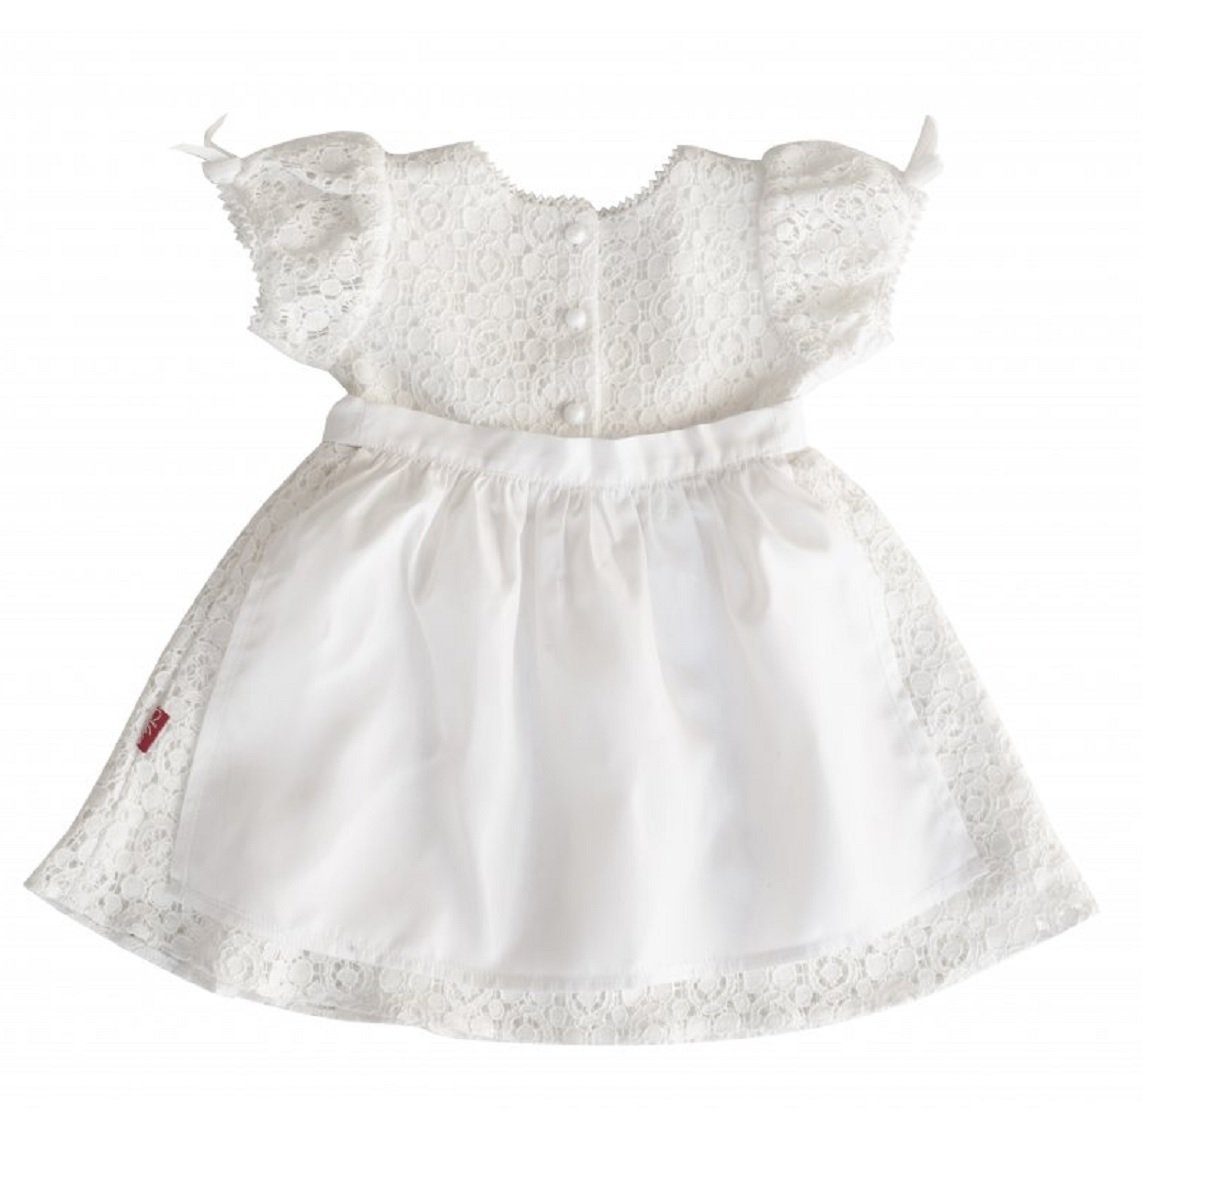 Dressvip Spitze Satin Weiß Elfenbein Taufkleid mit Hut Für Baby Mädchen 0-24 Monat 